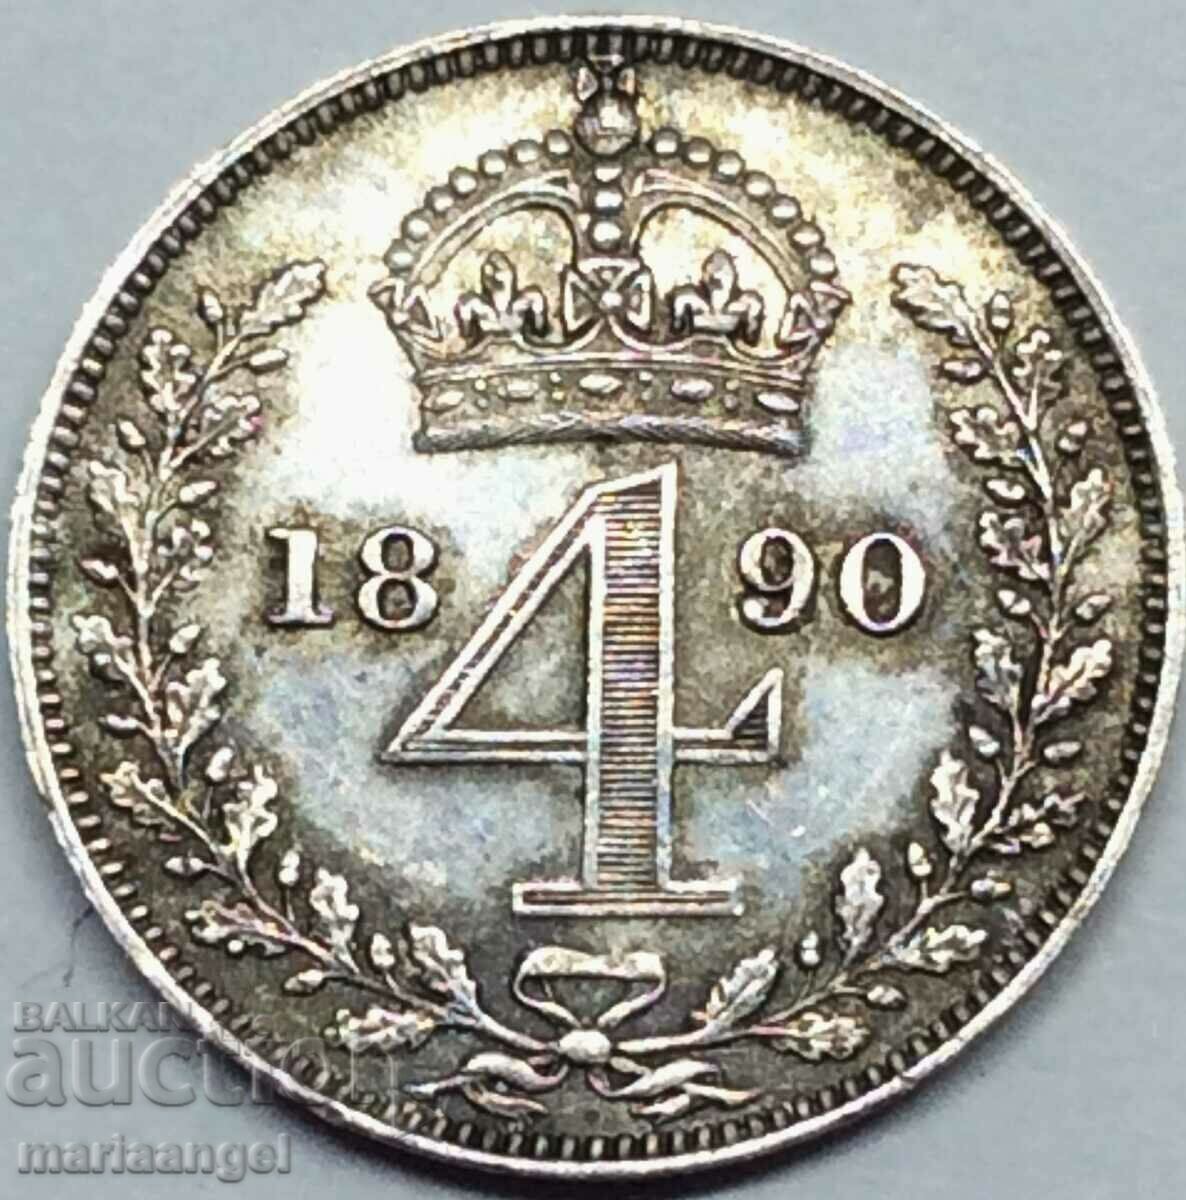 Великобритания 4 пенса 1890 Маунди Виктория сребро - рядка